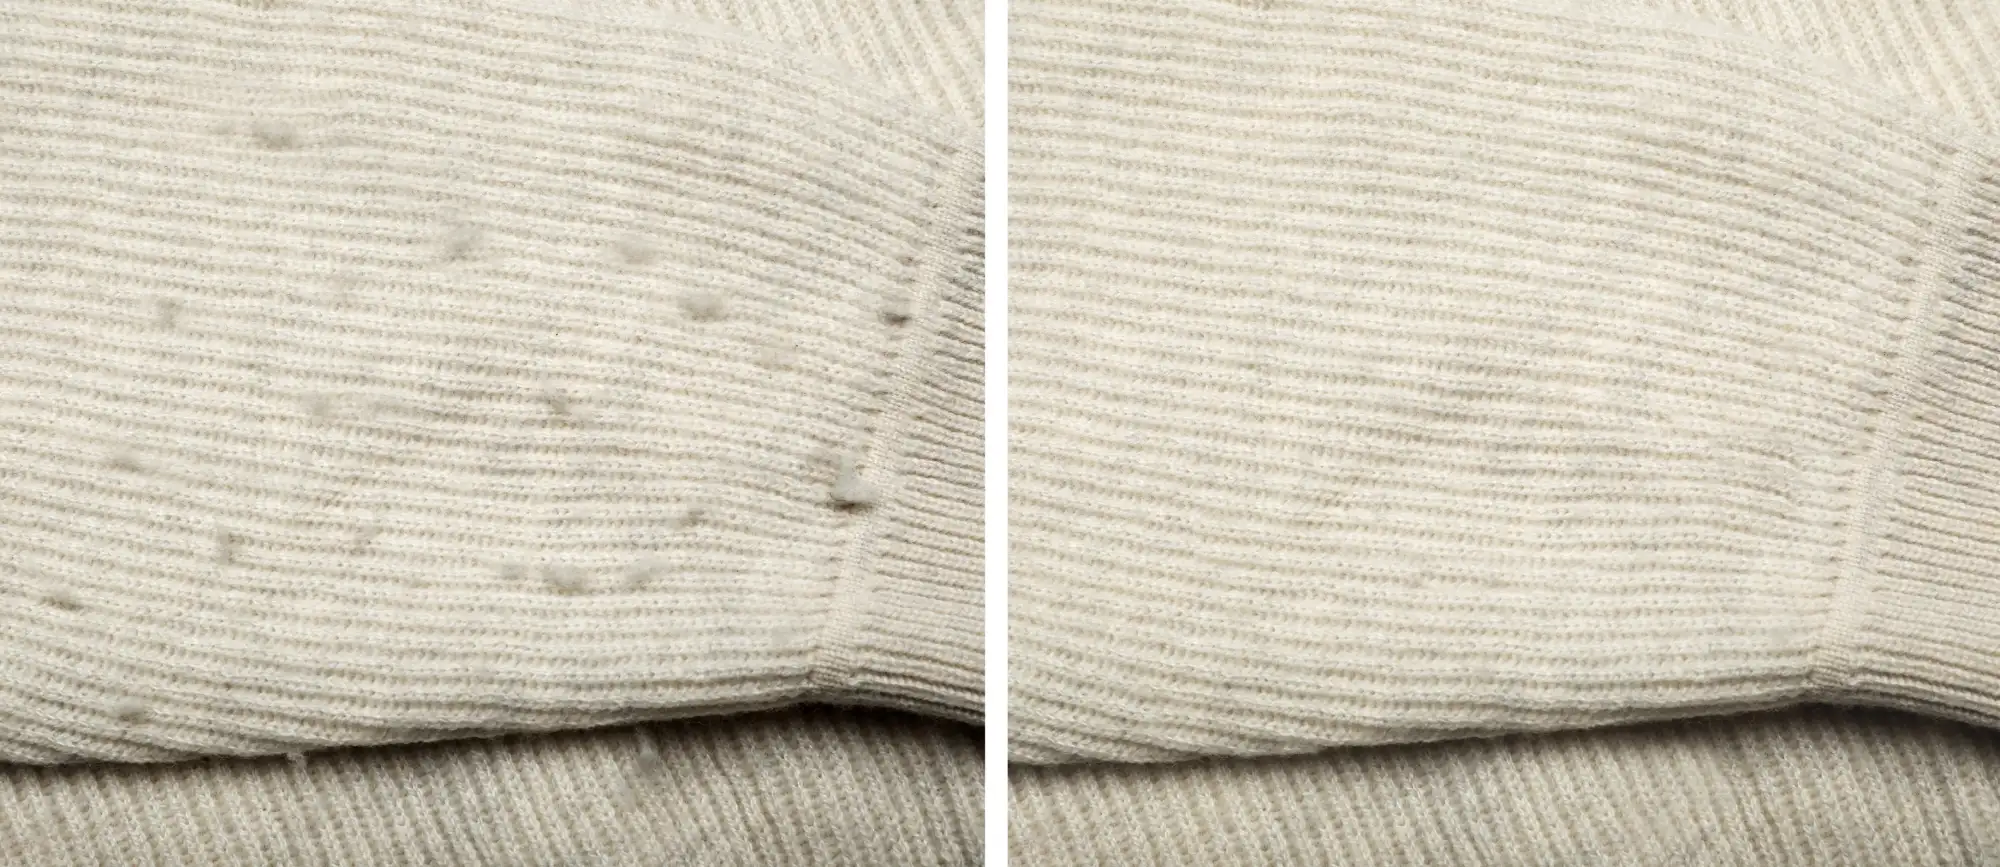 Trucos caseros: ¿cómo eliminar las bolitas de pelusa de mi ropa? Estos 3  trucos te ayudarán a lograrlo, trucos caseros, tips, Respuestas